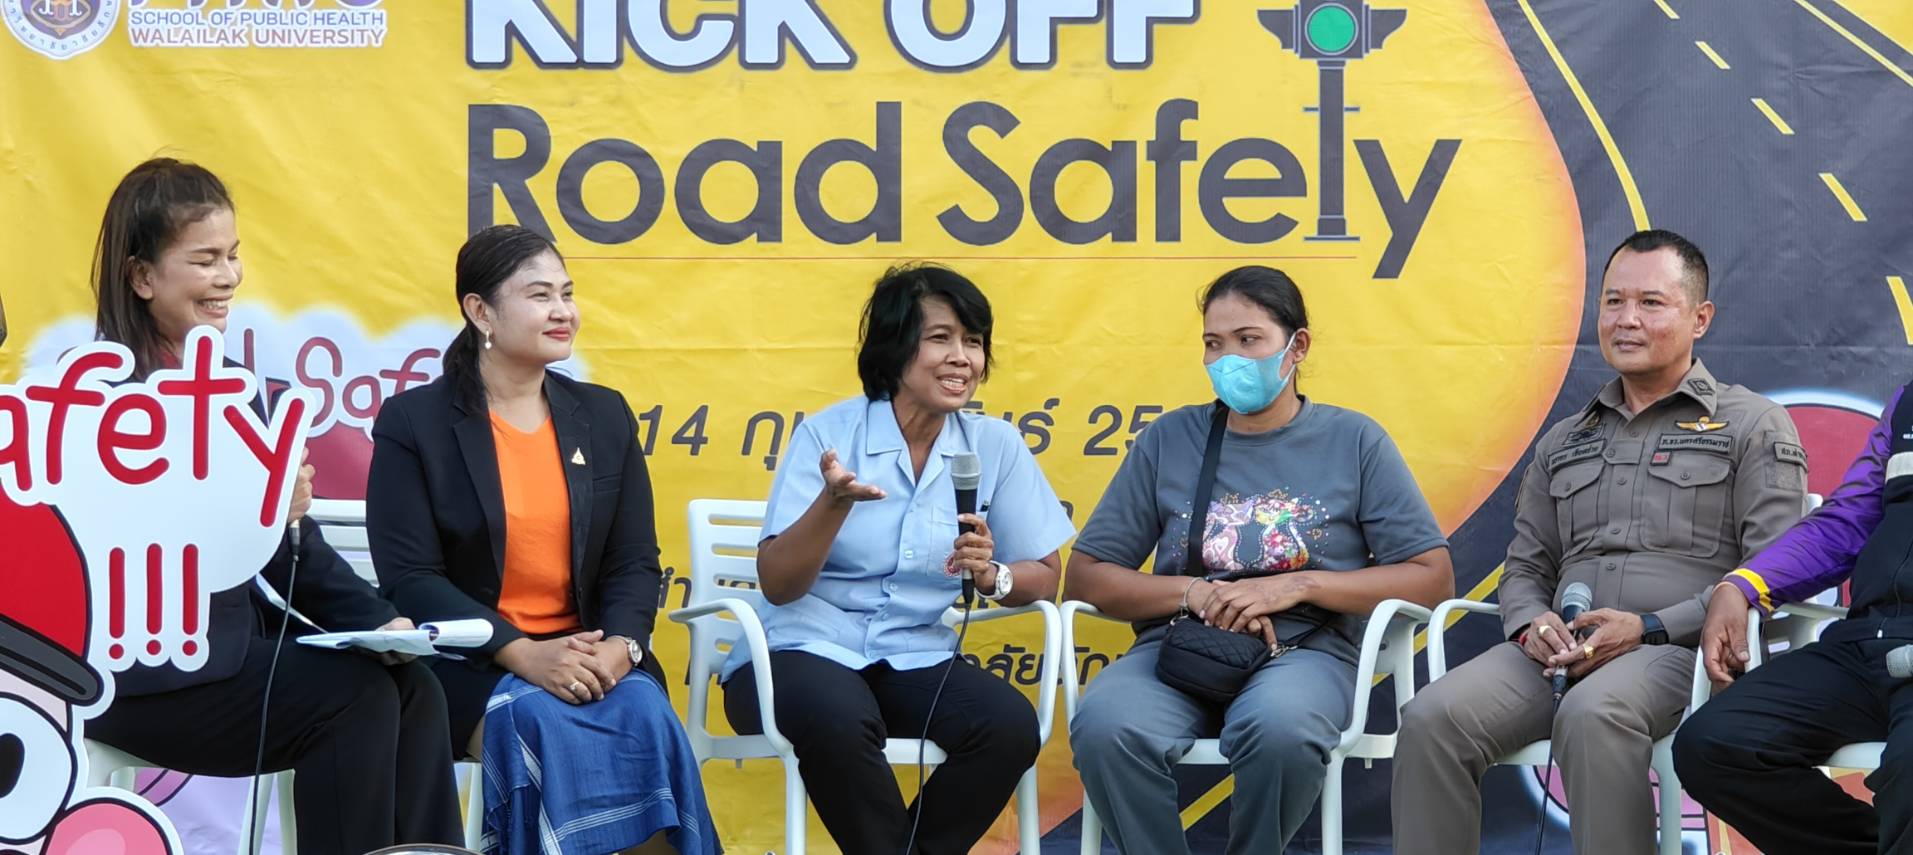 สพน. ร่วมกับสำนักวิชาสหเวชศาสตร์ Kick Off โครงการ Road Safety หวังเพิ่มความปลอดภัยทางถนนของมหาวิทยาลัย